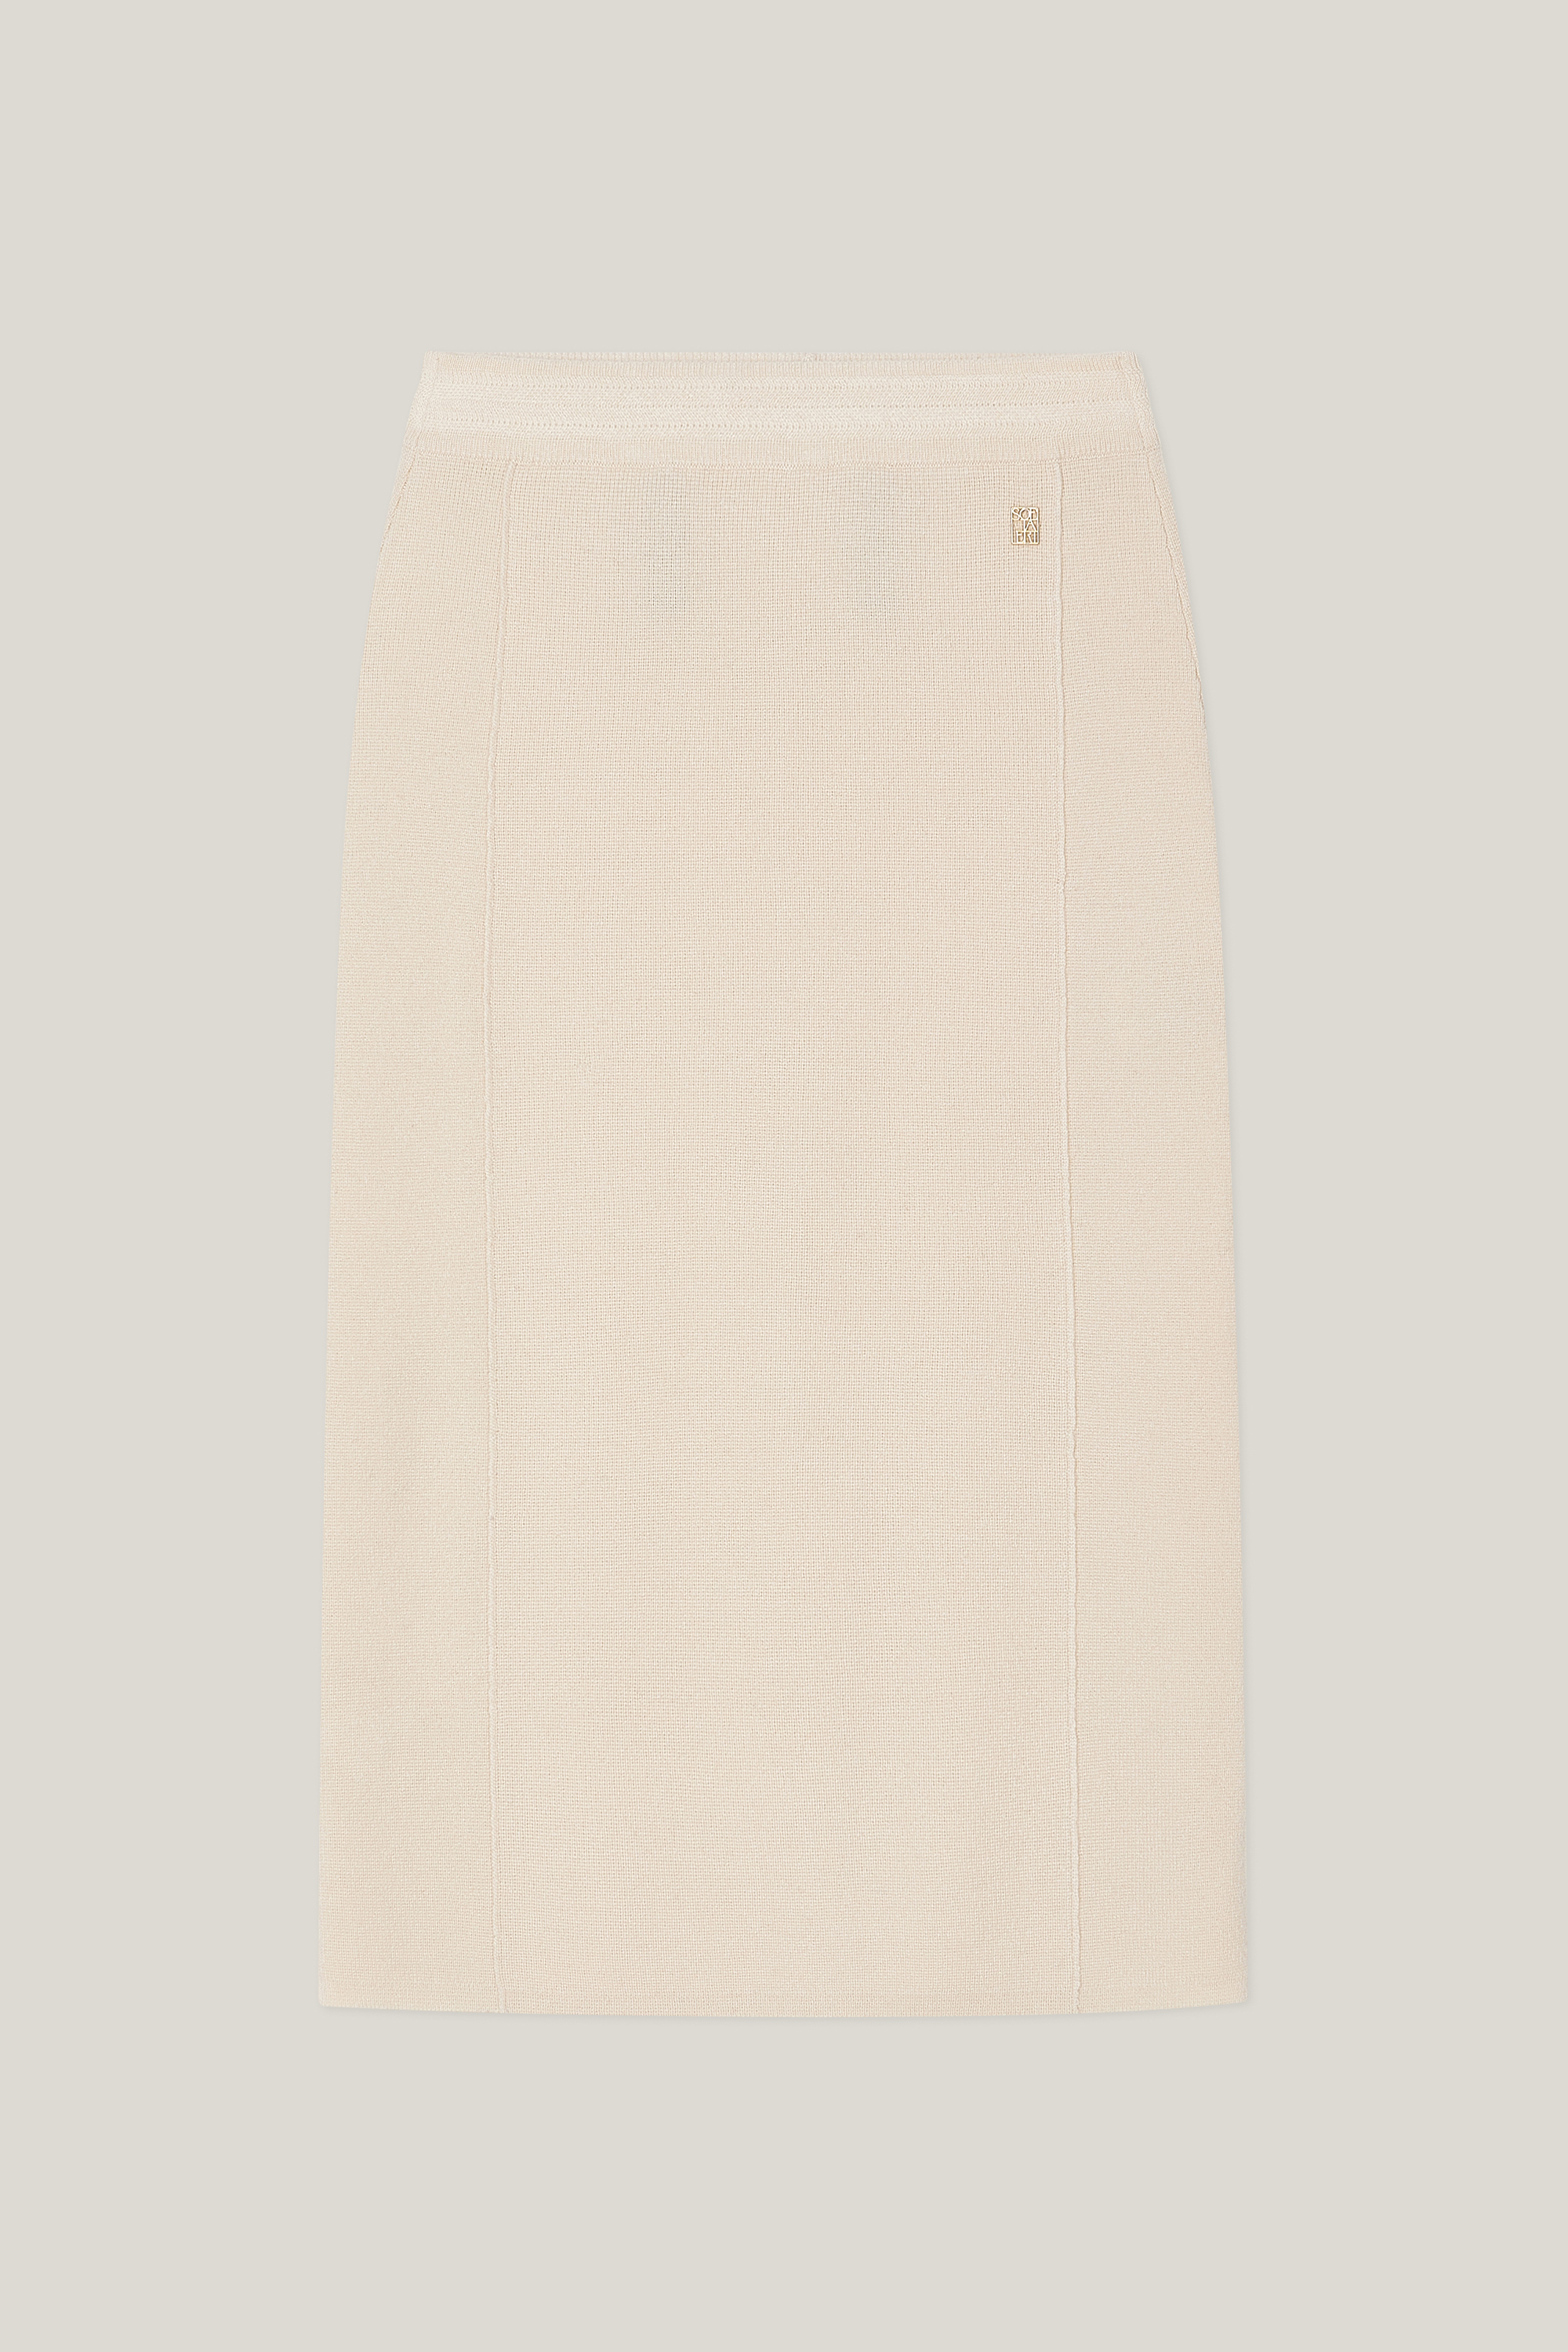 Jade Midi Skirt (Sand Beige)